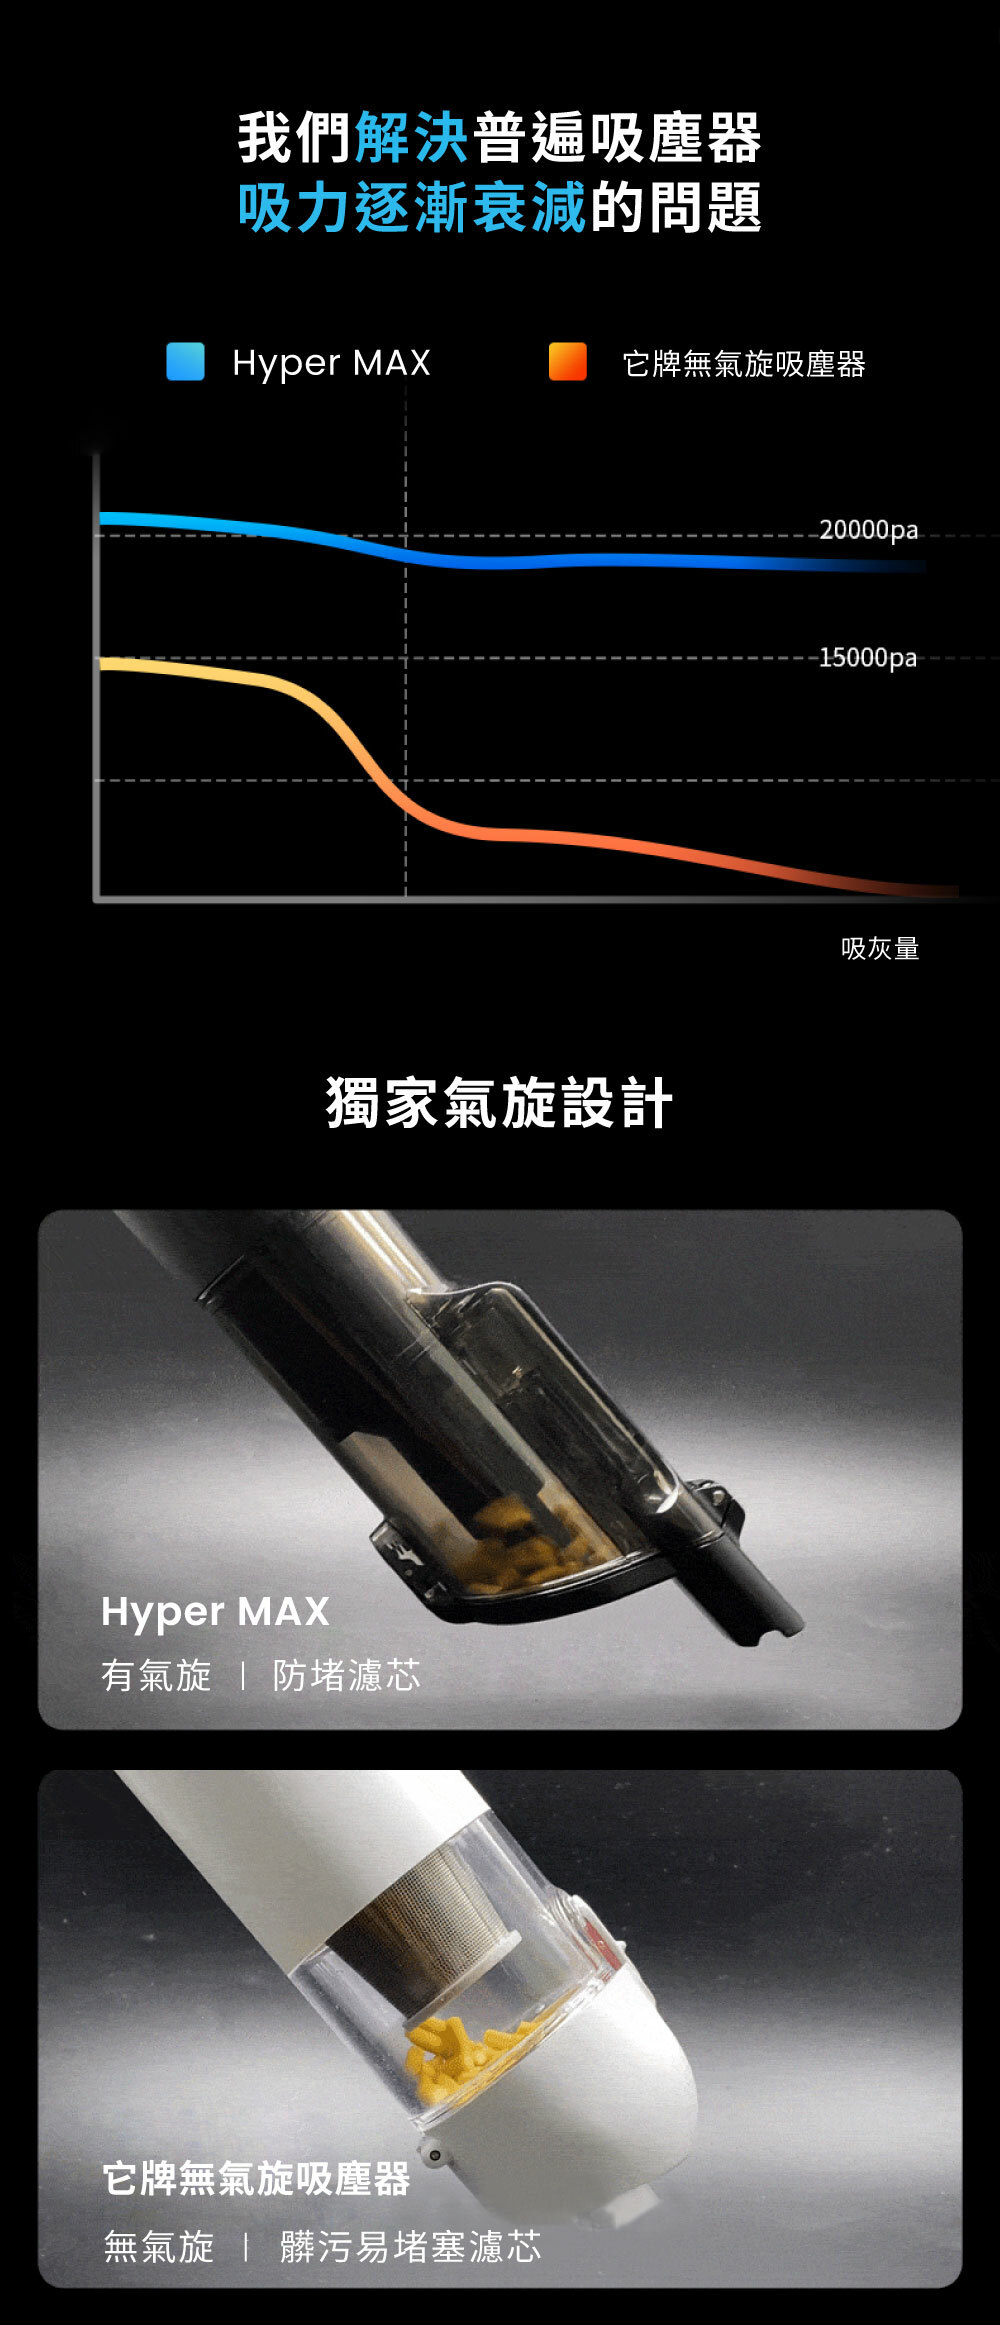 我們解決普遍吸塵器吸力逐漸衰減的問題Hyper MAX它牌無氣旋吸塵器獨家氣旋設計Hyper MAX有氣旋  防堵濾芯它牌無氣旋吸塵器無氣旋  髒污易堵塞濾芯20000pa--15000pa吸灰量